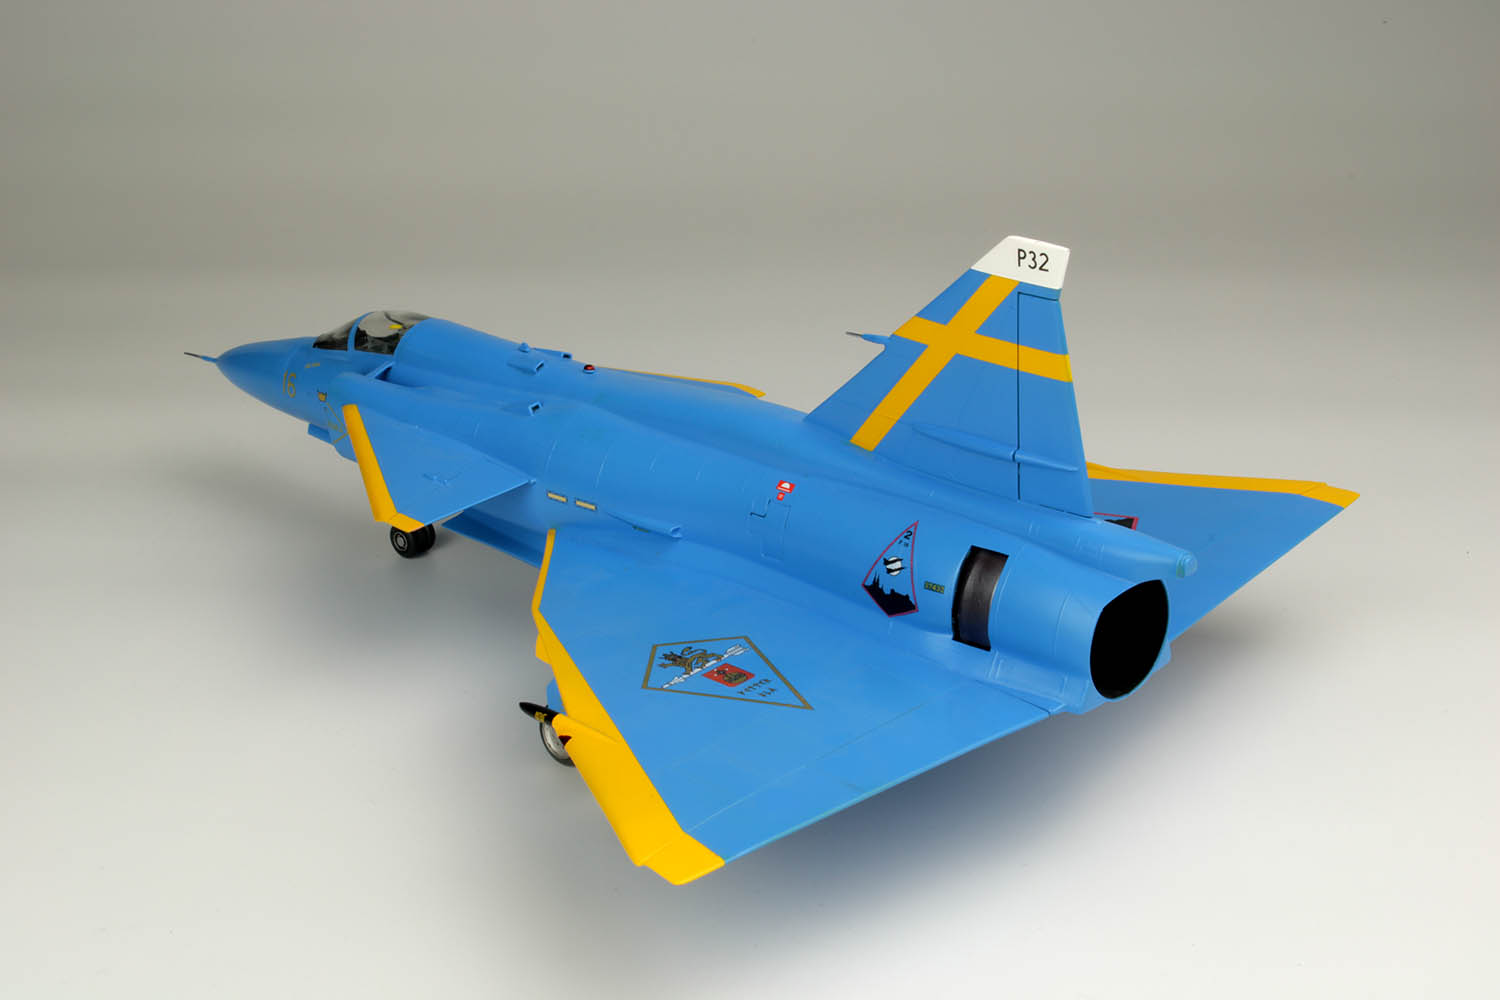 1/48 スウェーデン空軍 JA37 ヤクトビゲン "ブルーピーター" スウェーデン空軍75周年記念塗装機